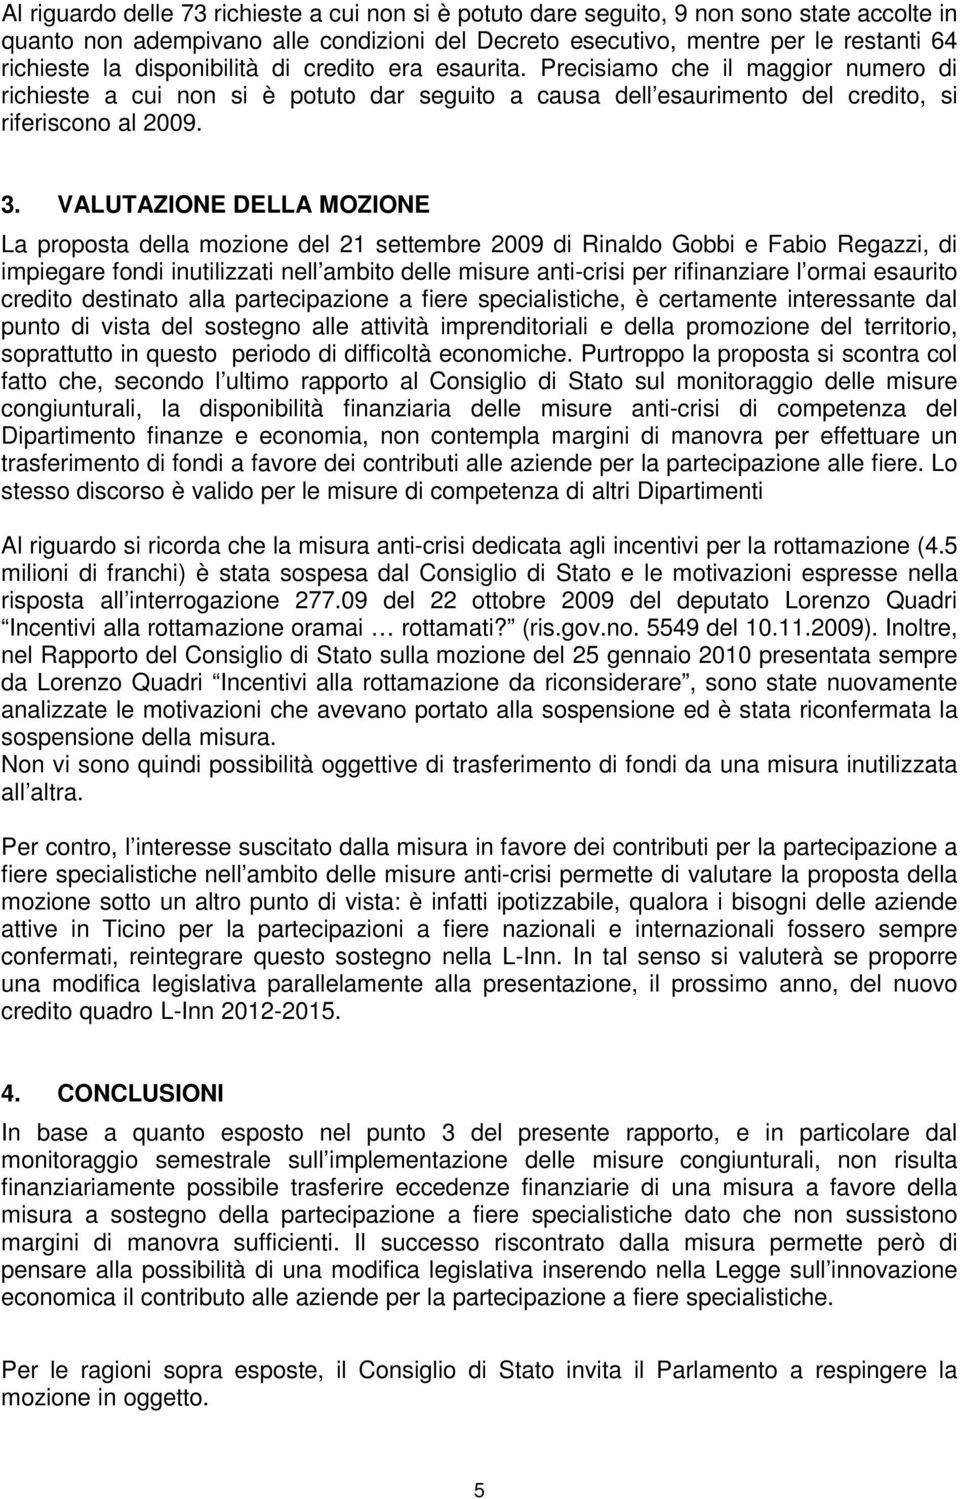 VALUTAZIONE DELLA MOZIONE La proposta della mozione del 21 settembre 2009 di Rinaldo Gobbi e Fabio Regazzi, di impiegare fondi inutilizzati nell ambito delle misure anti-crisi per rifinanziare l